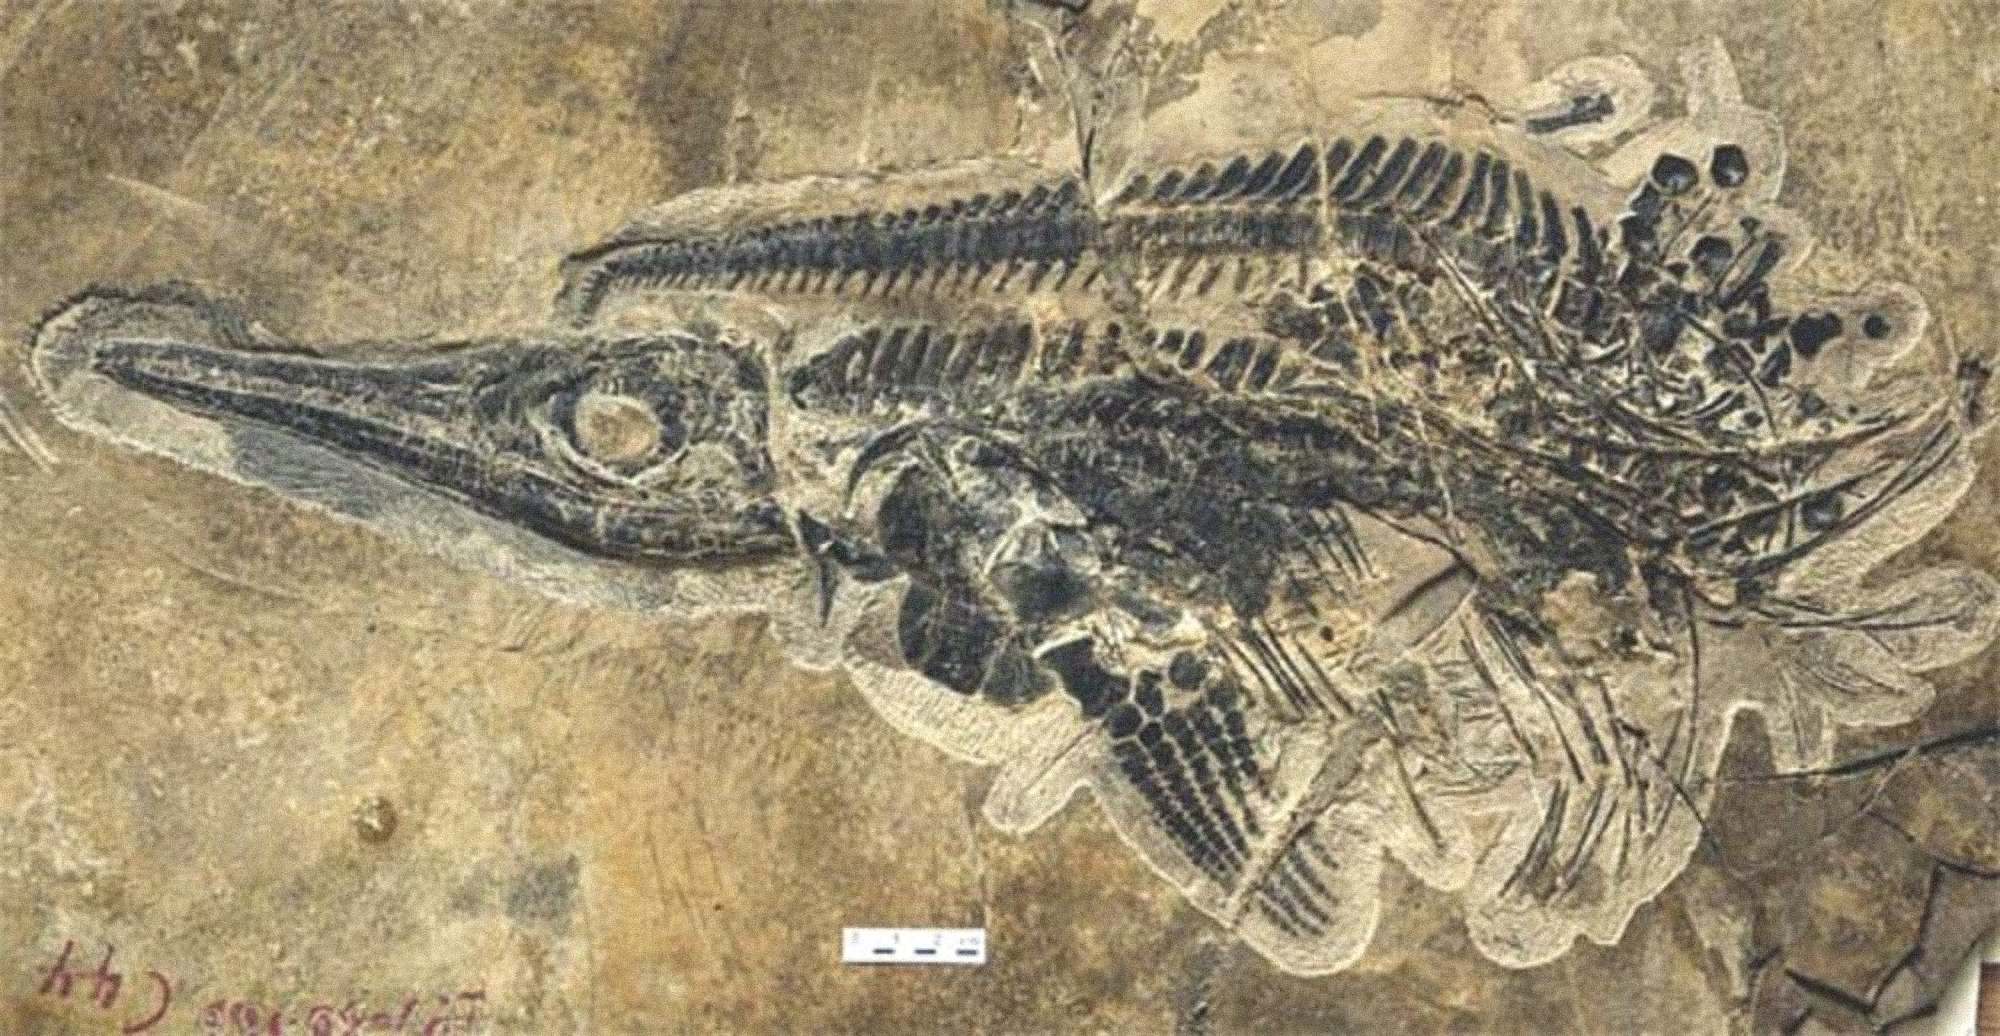 Et fossil af det marine krybdyr med delfinlegeme, kendt som en ichthyosaur, opdaget som en del af en kæmpe cache med næsten 20,000 fossiler i Kina.